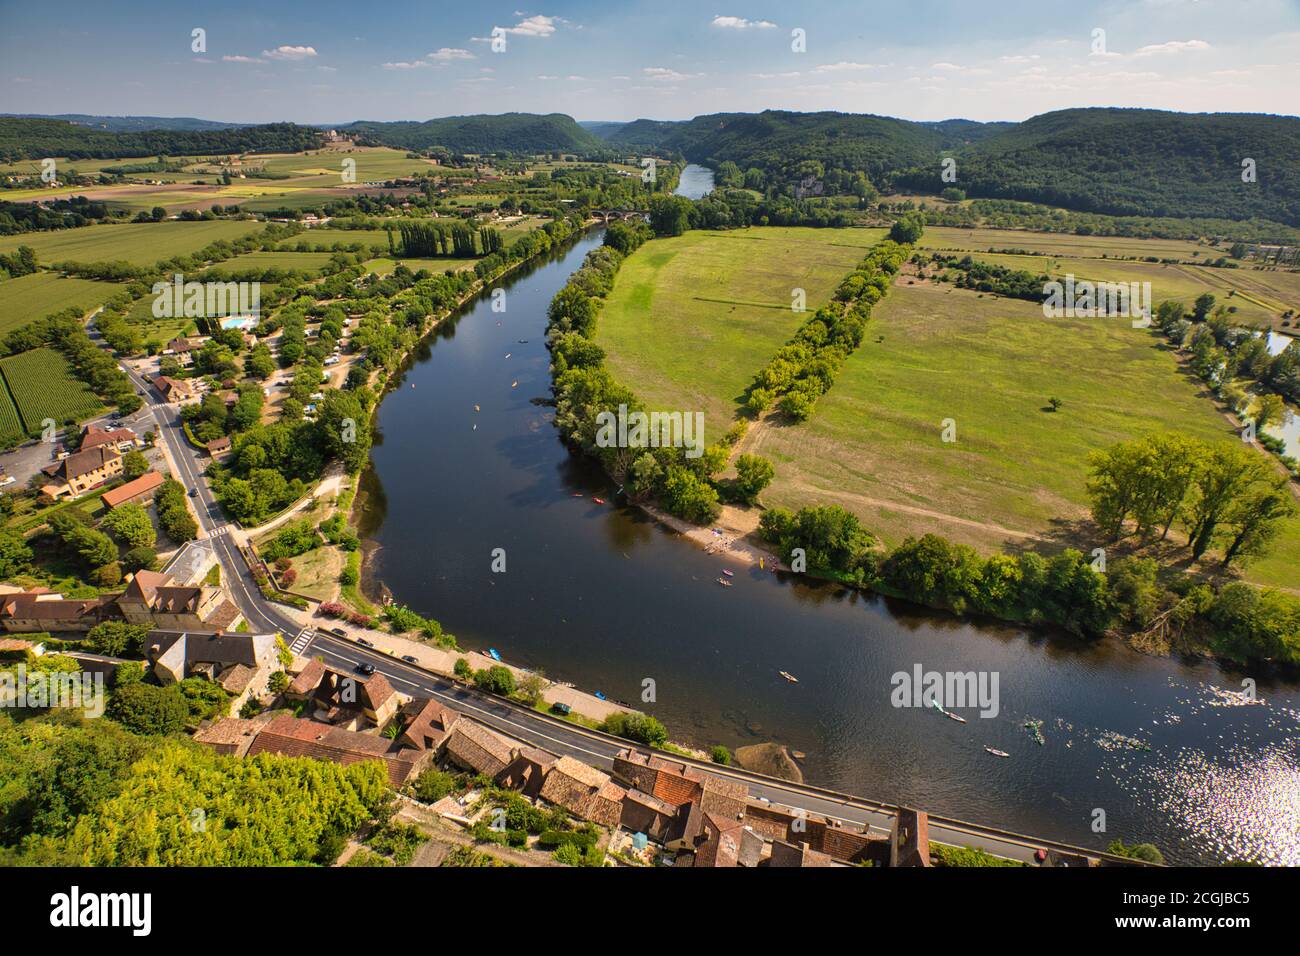 Blick über die Landschaft und den Fluss Dordogne vom Chateau de Beynac in Beynac et Cazenac am Ufer des Flusses Dordogne, der Dordogne, Frankreich Stockfoto